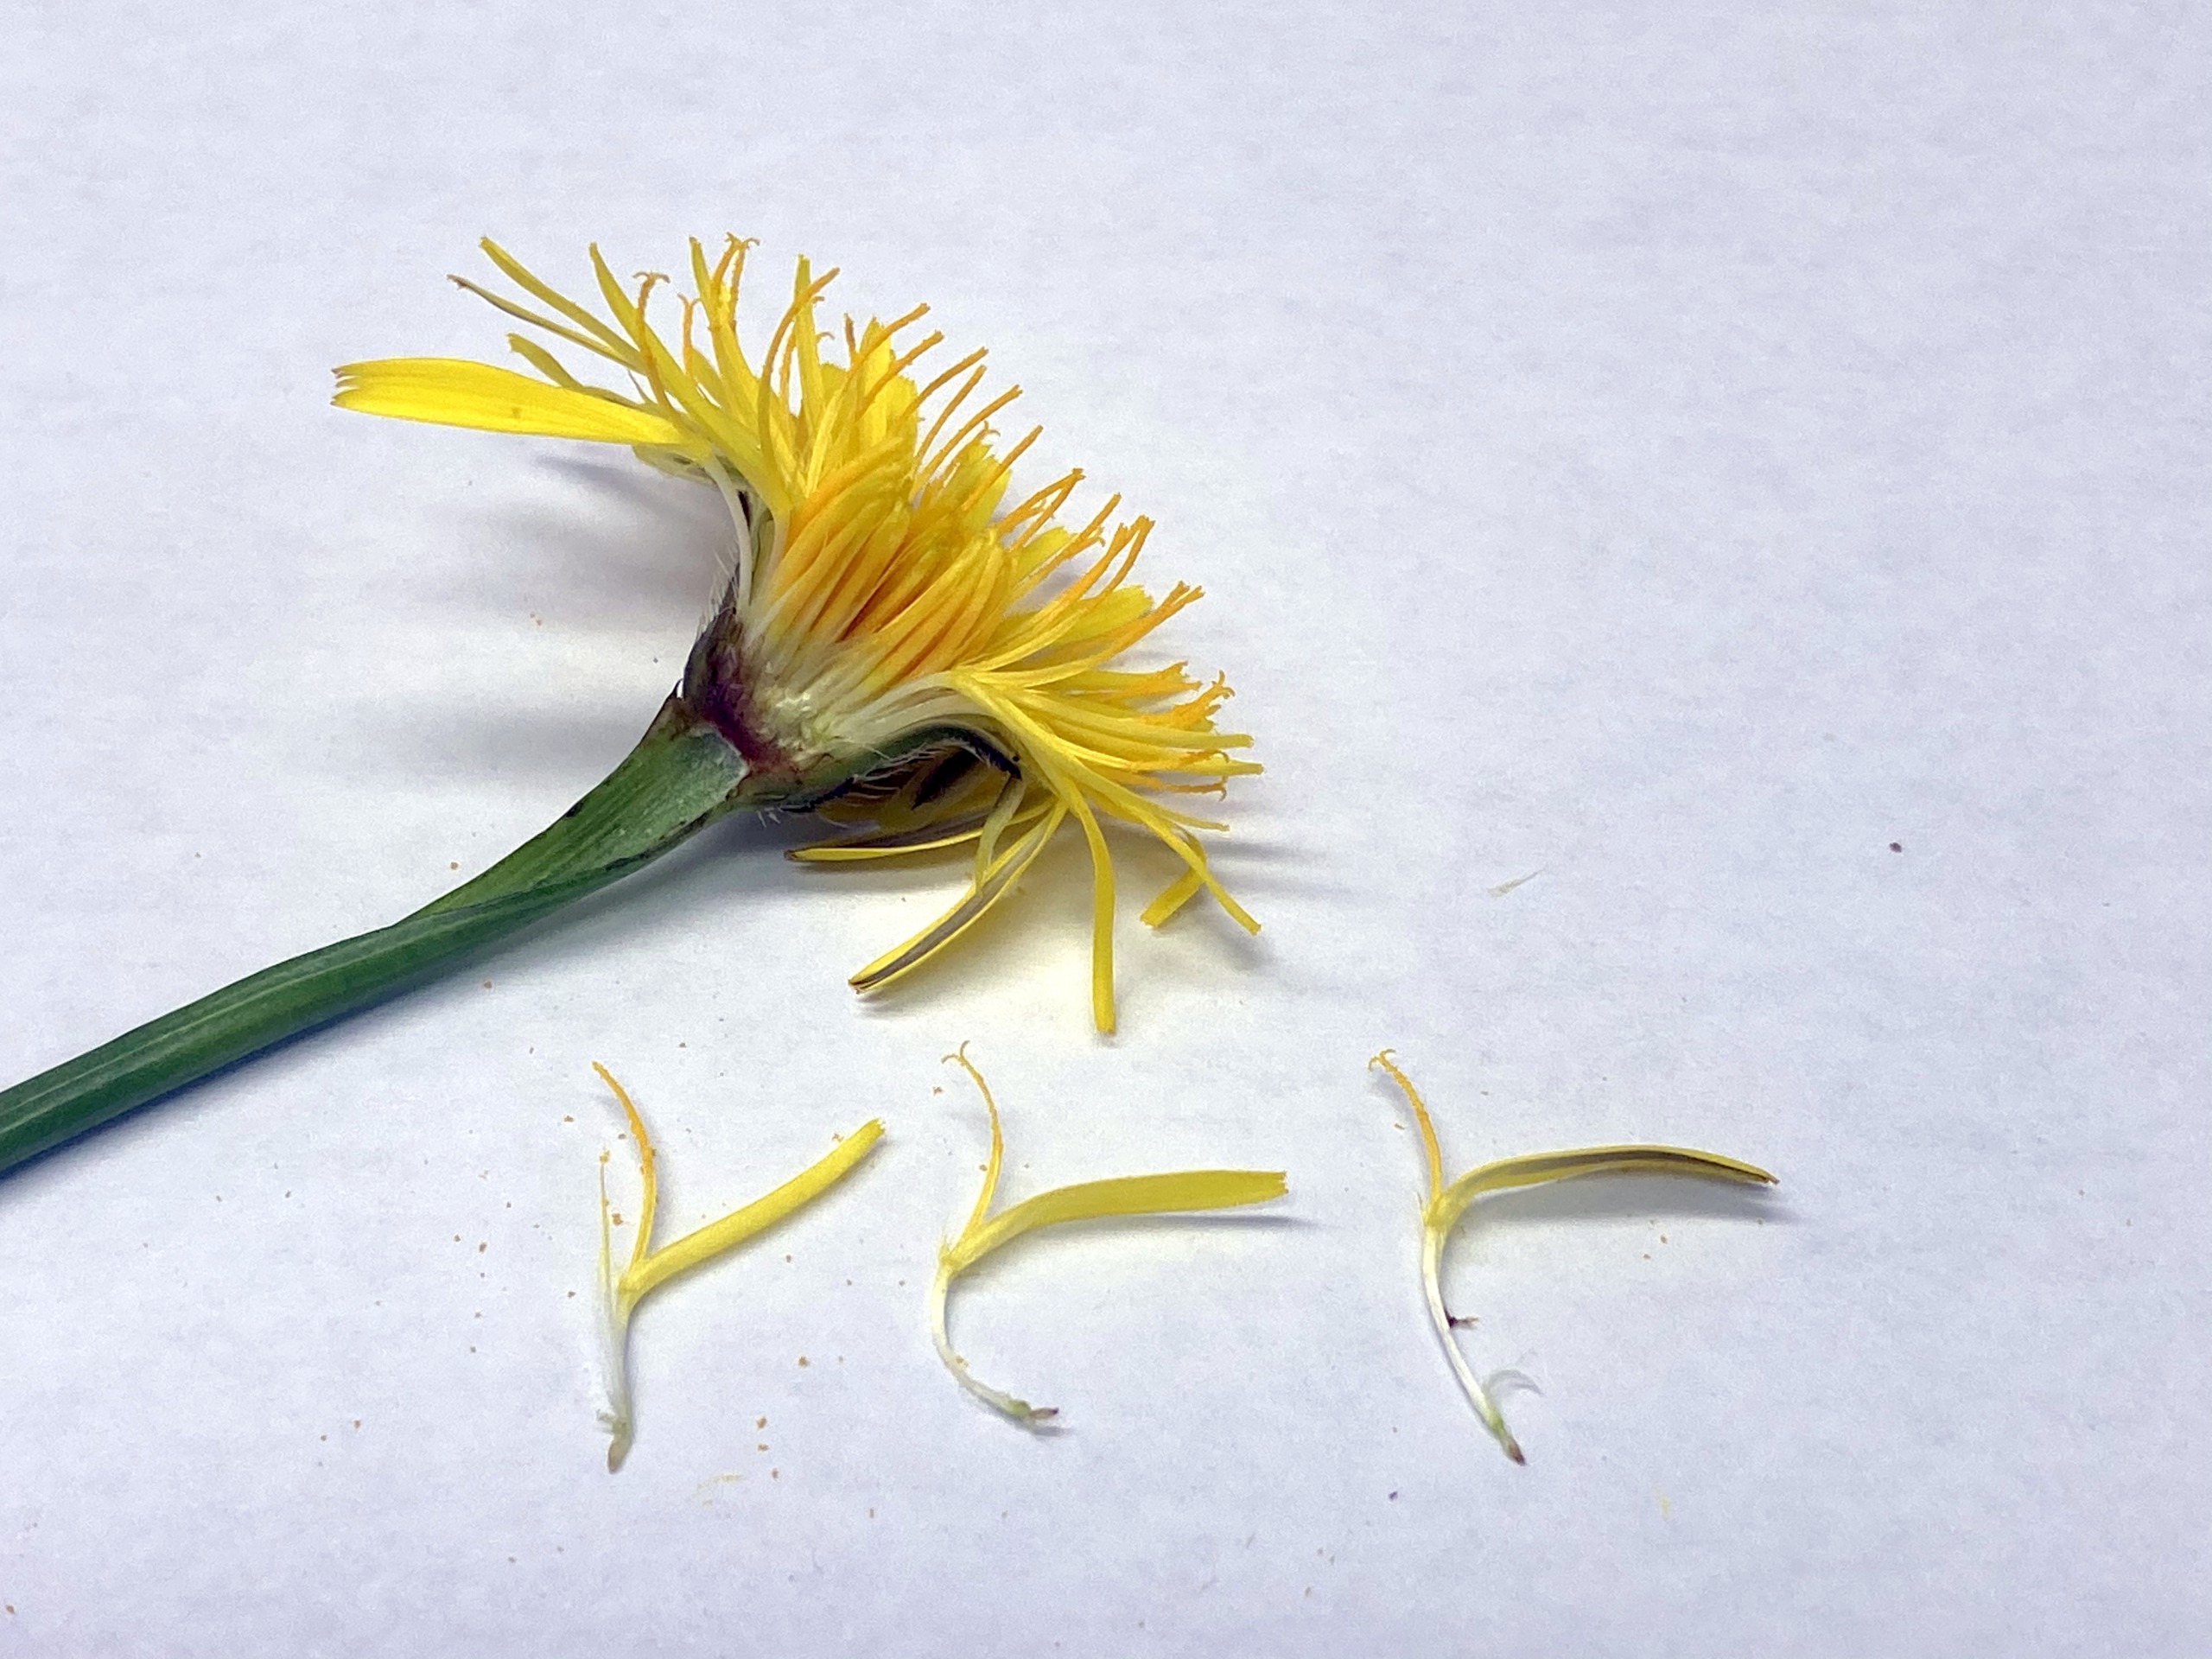 ご近所の草花 タンポポそっくりな花は何だろう 広島市植物公園の久保さんに聞いてみた まるごとgo 広島市安佐南区 安佐北区あたりの地域情熱ブログ